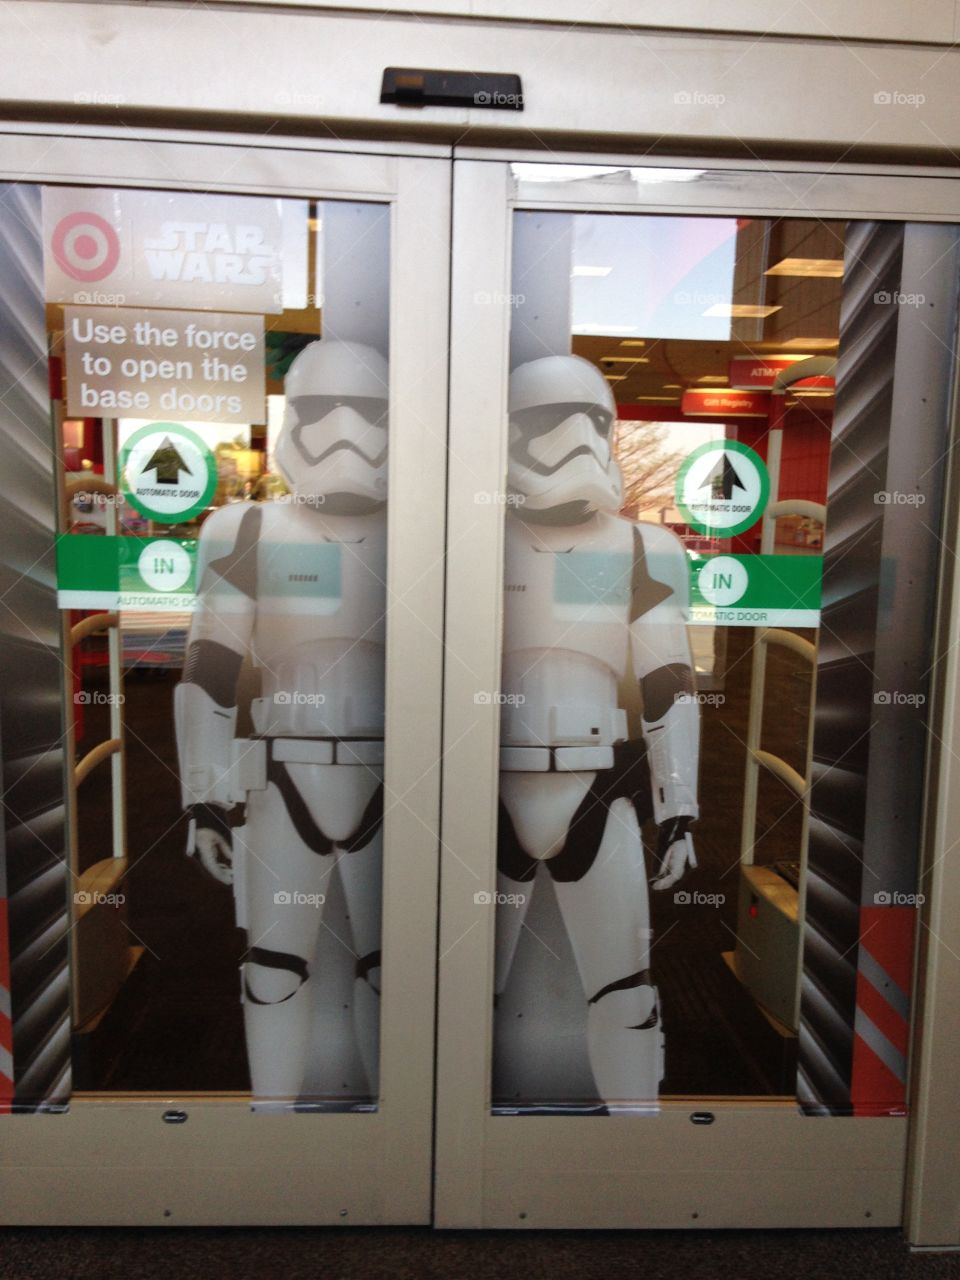 Star Wars Troops at Target